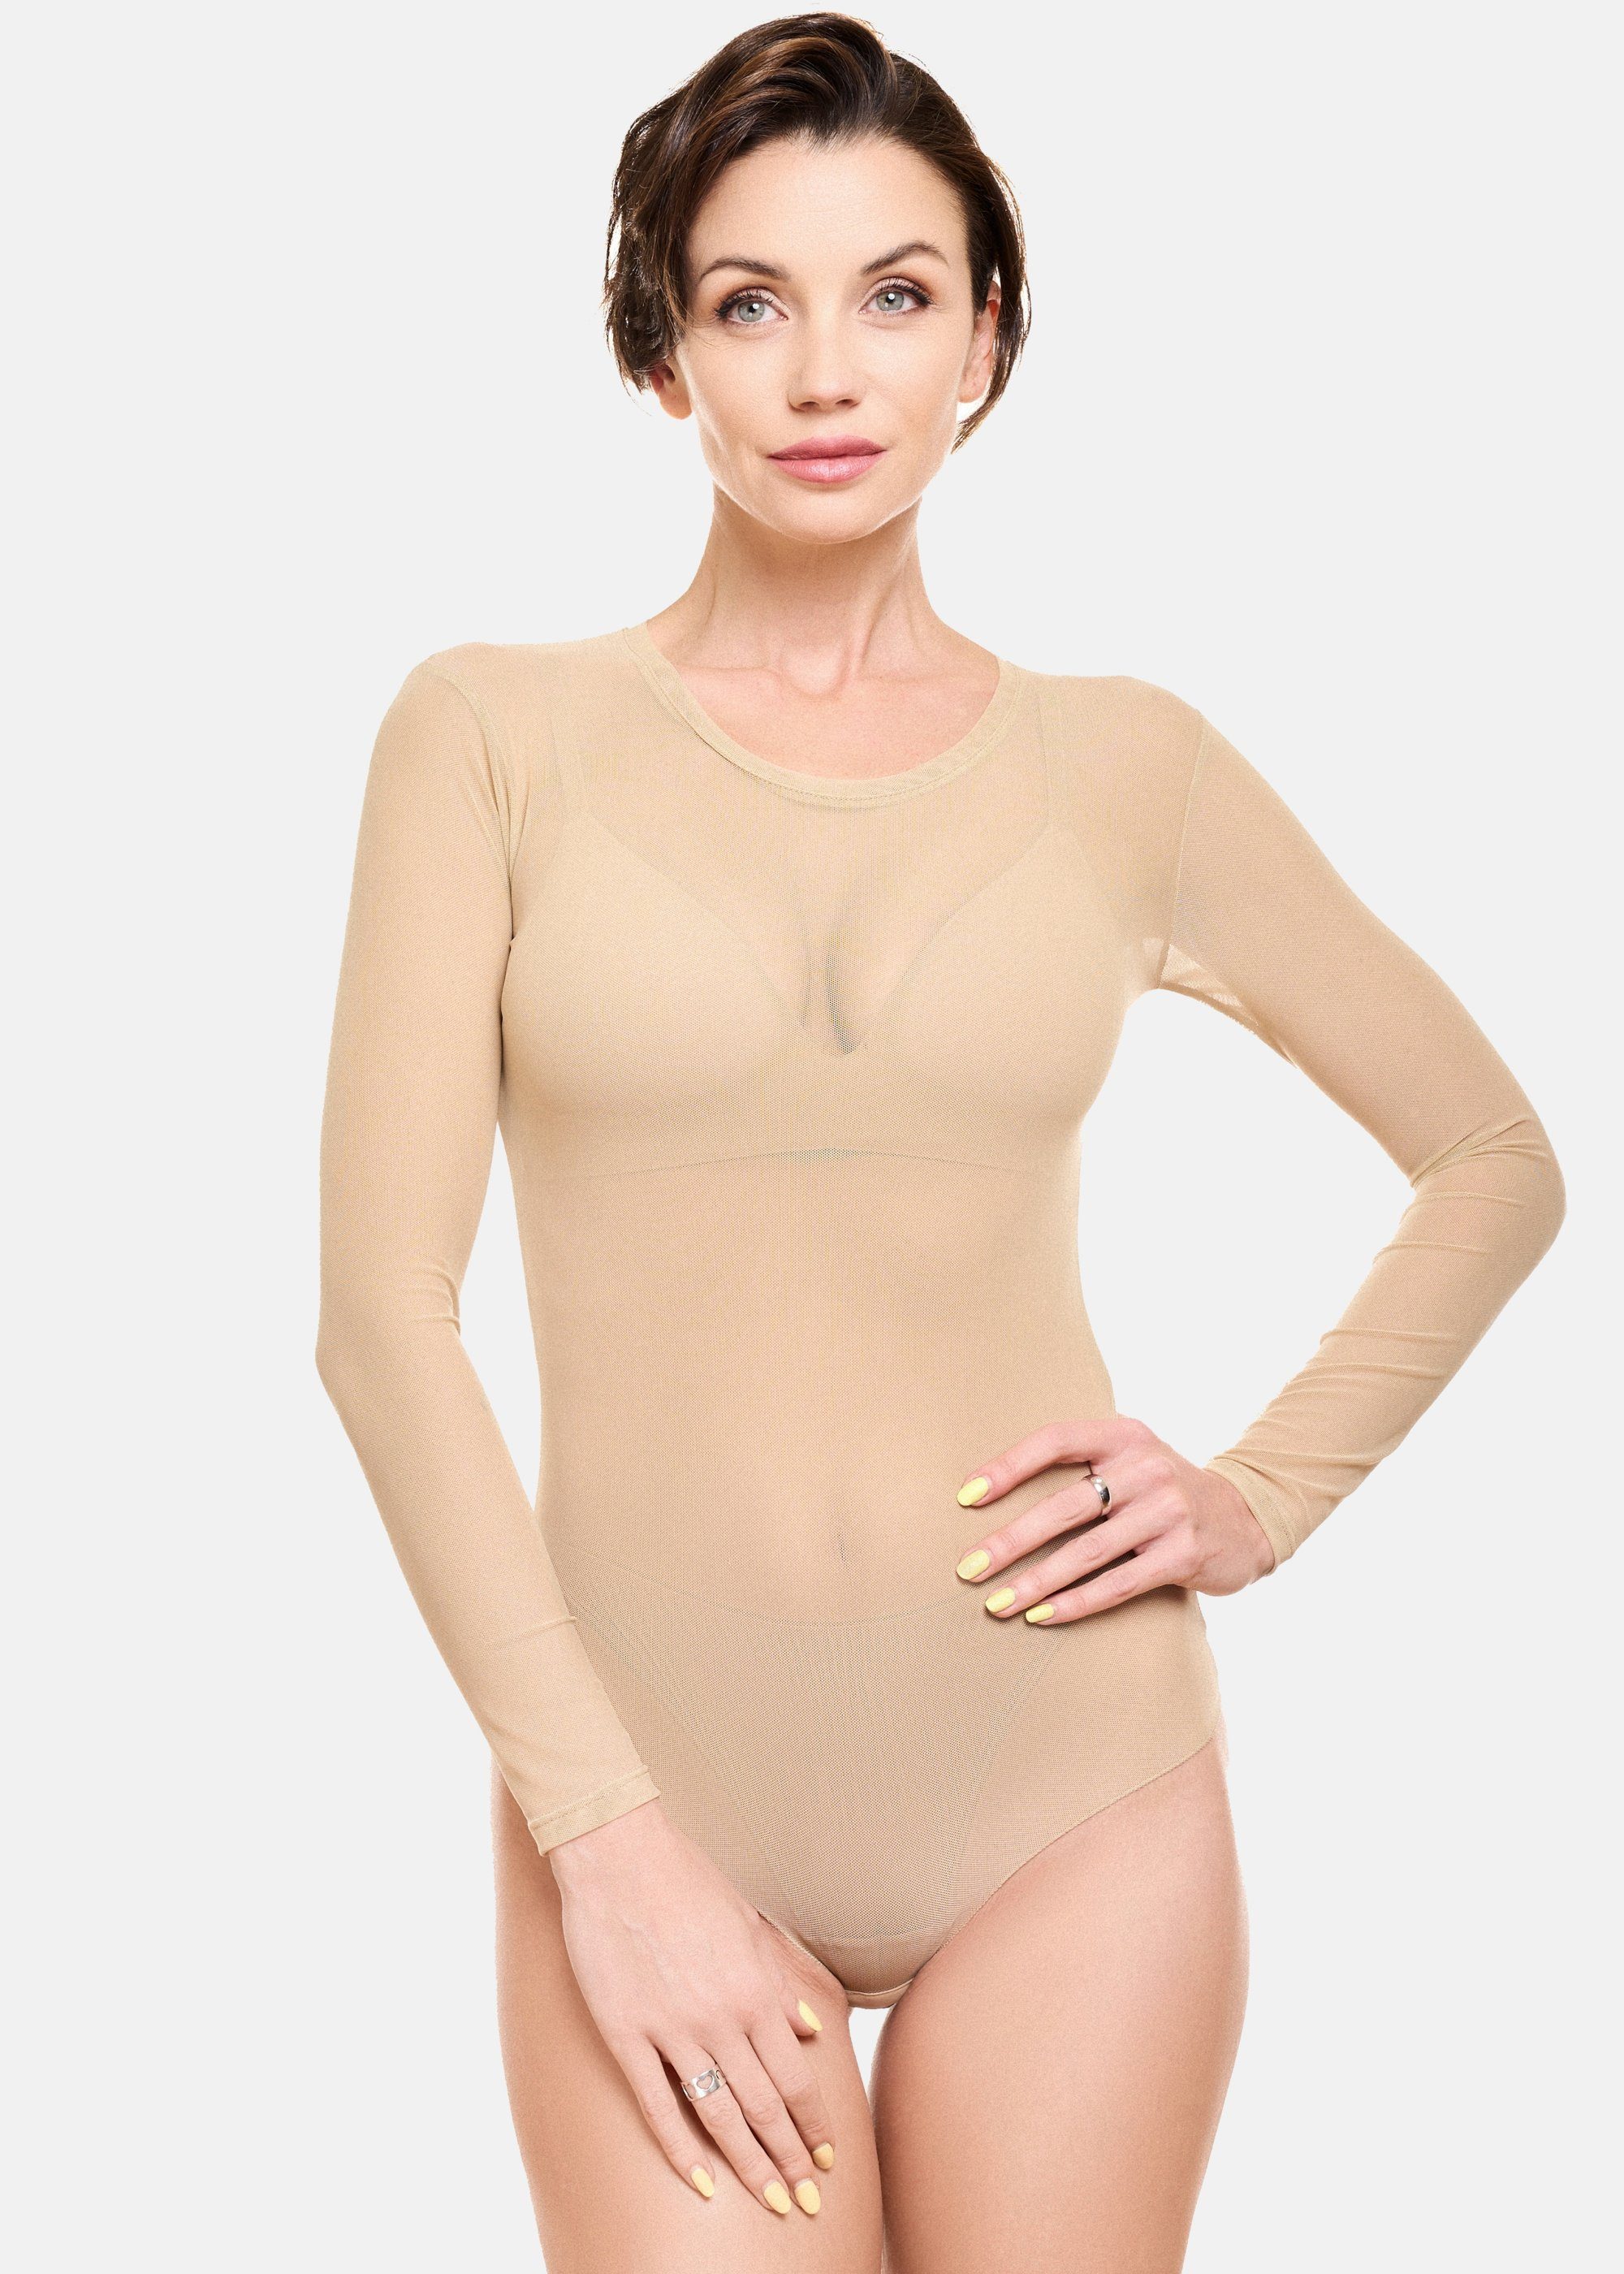 Evoni Body Damen Langarmbody transparent, 3 Verschluss-Haken im Schritt  online kaufen | OTTO